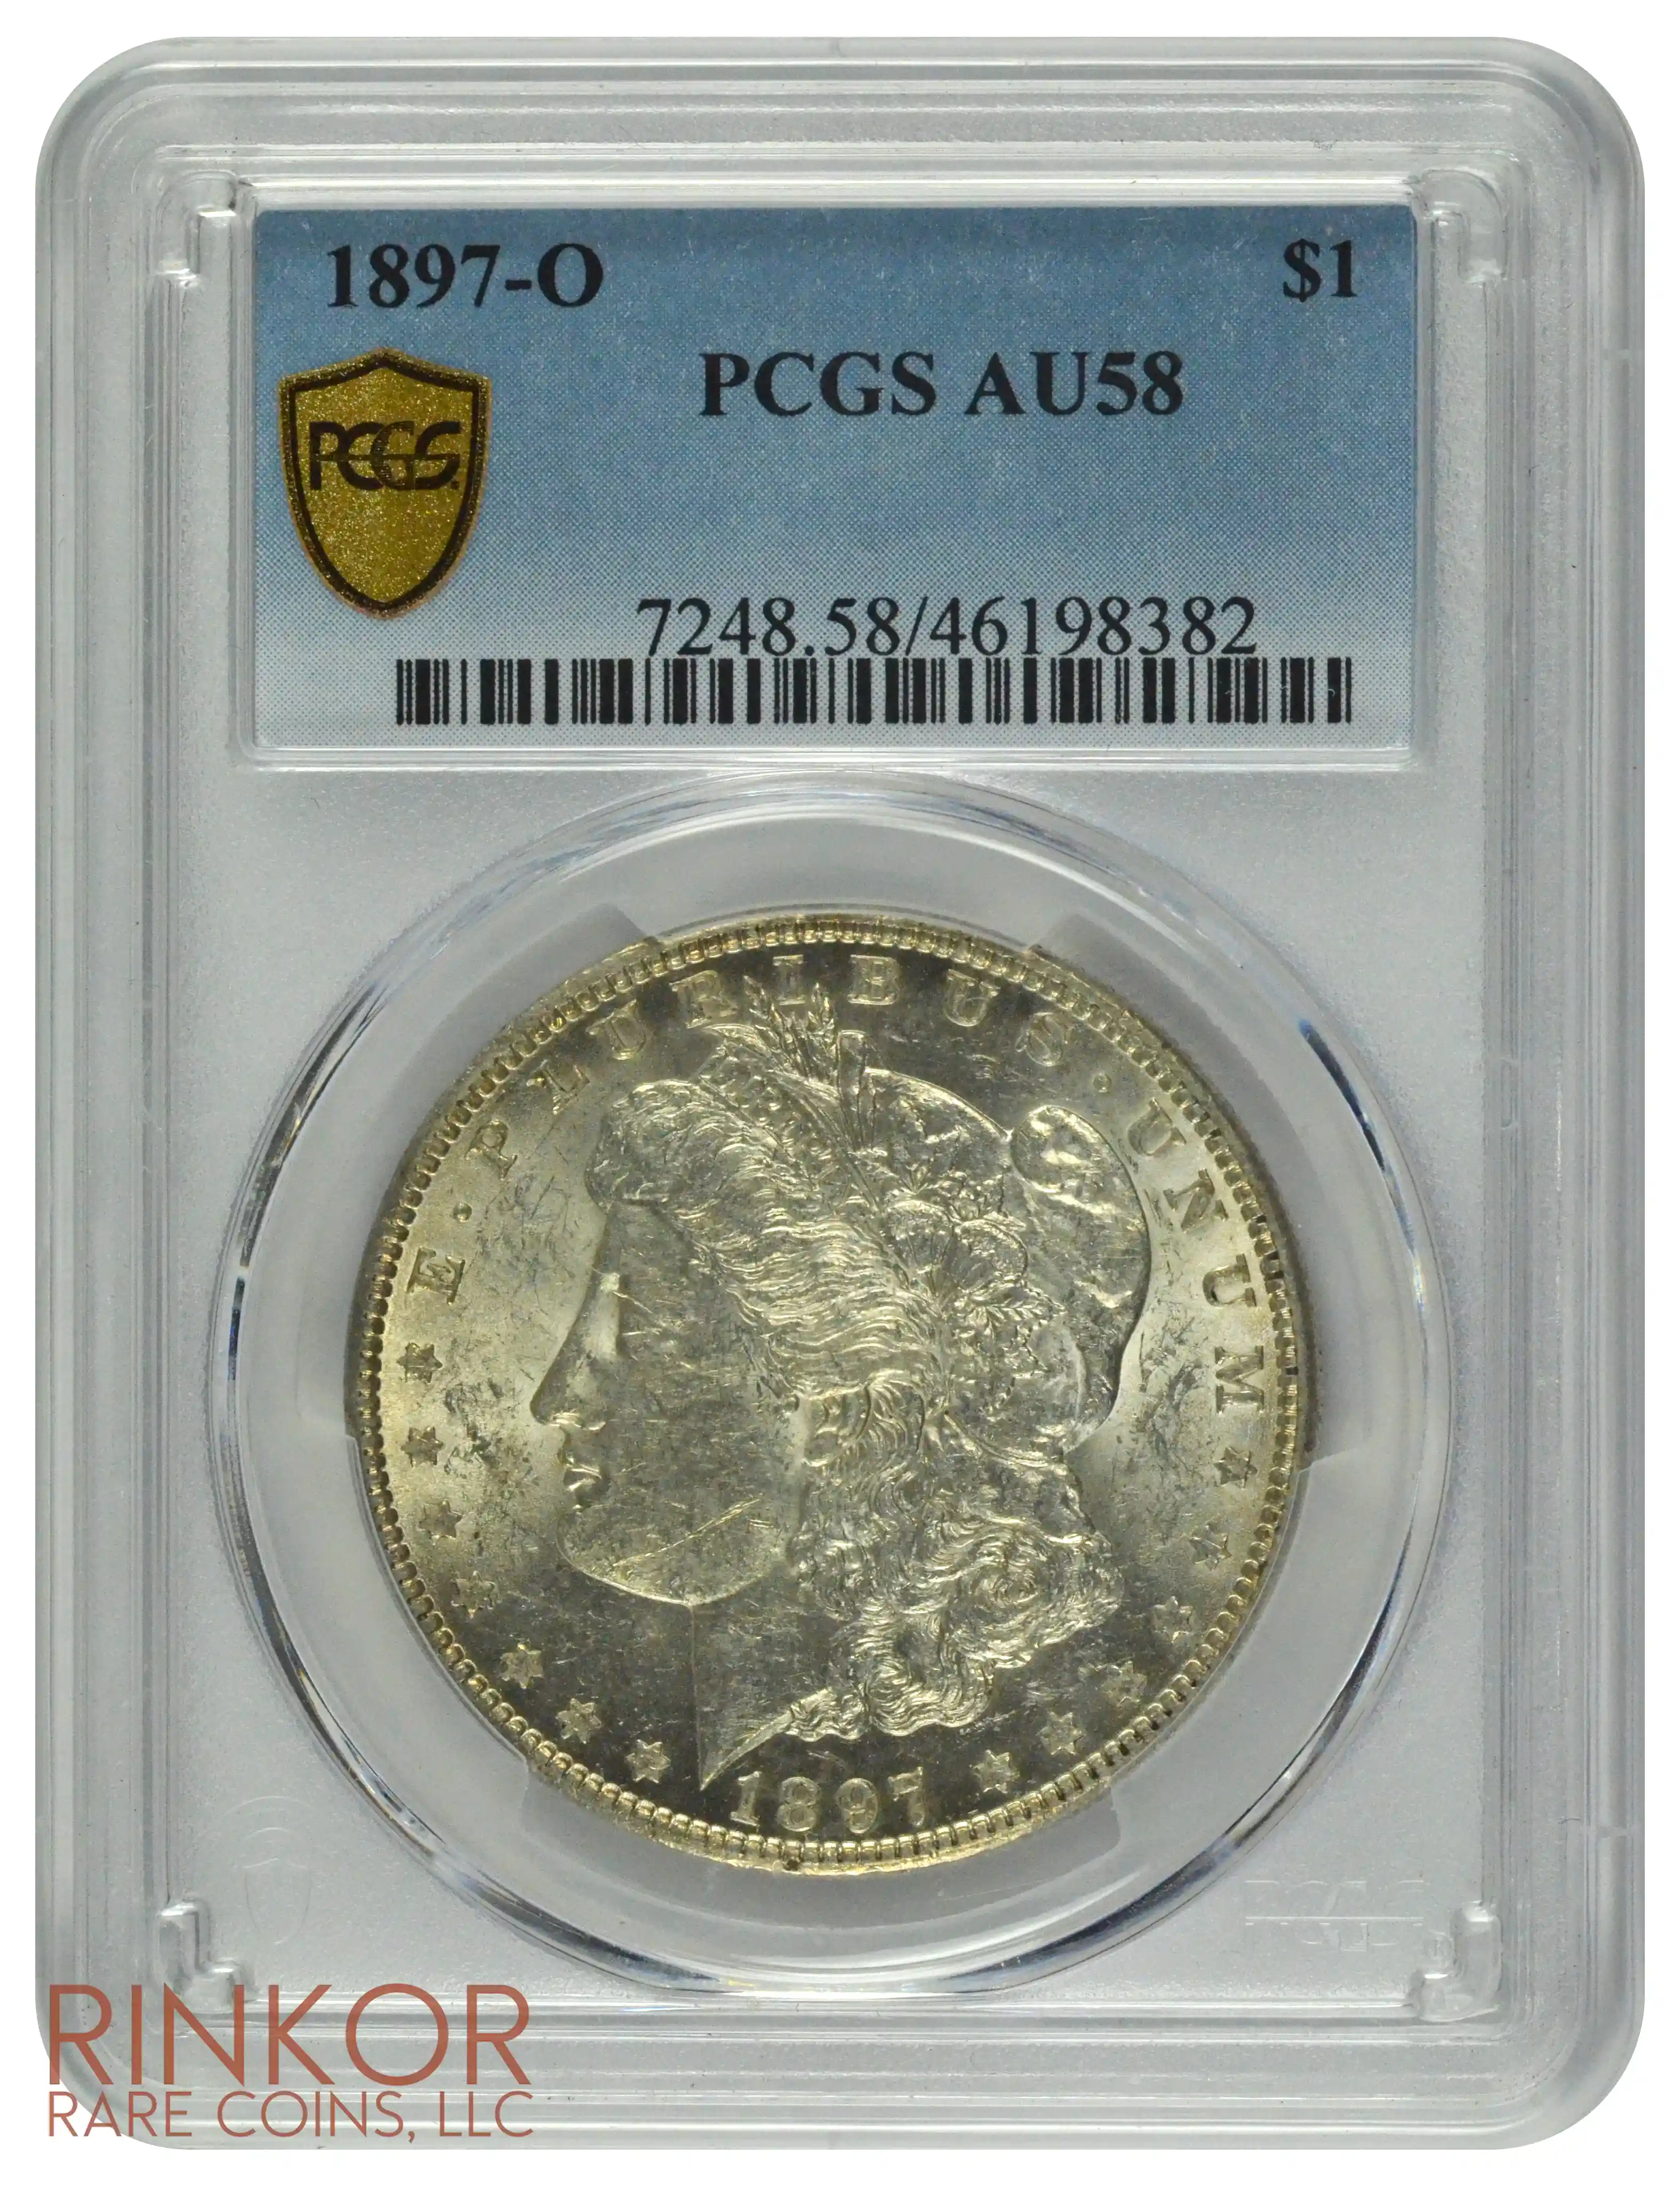 1897-O $1 PCGS AU-58